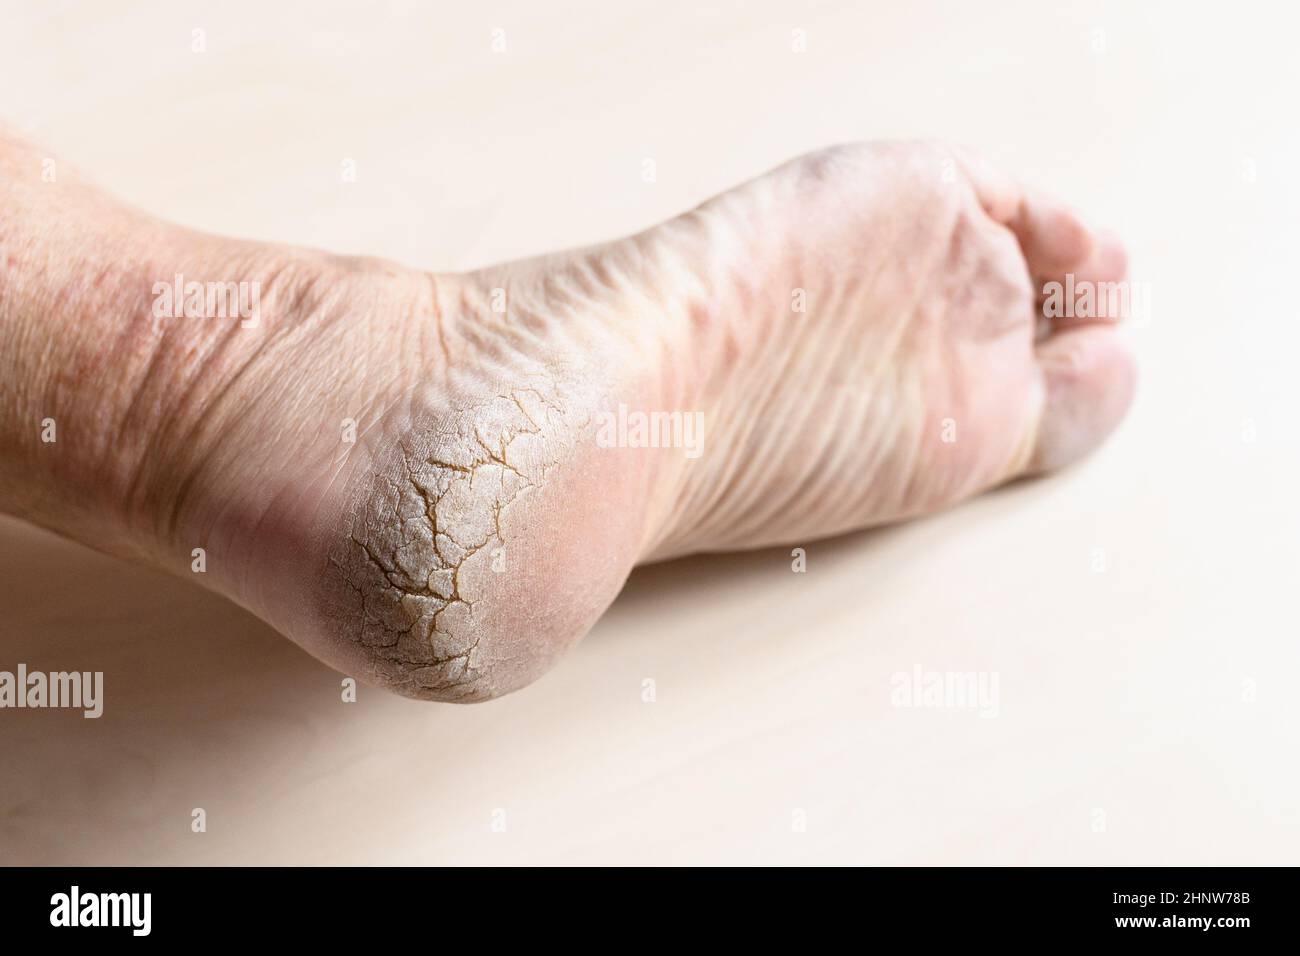 pelle secca morta spaccata sul tallone del piede maschio in primo piano Foto Stock